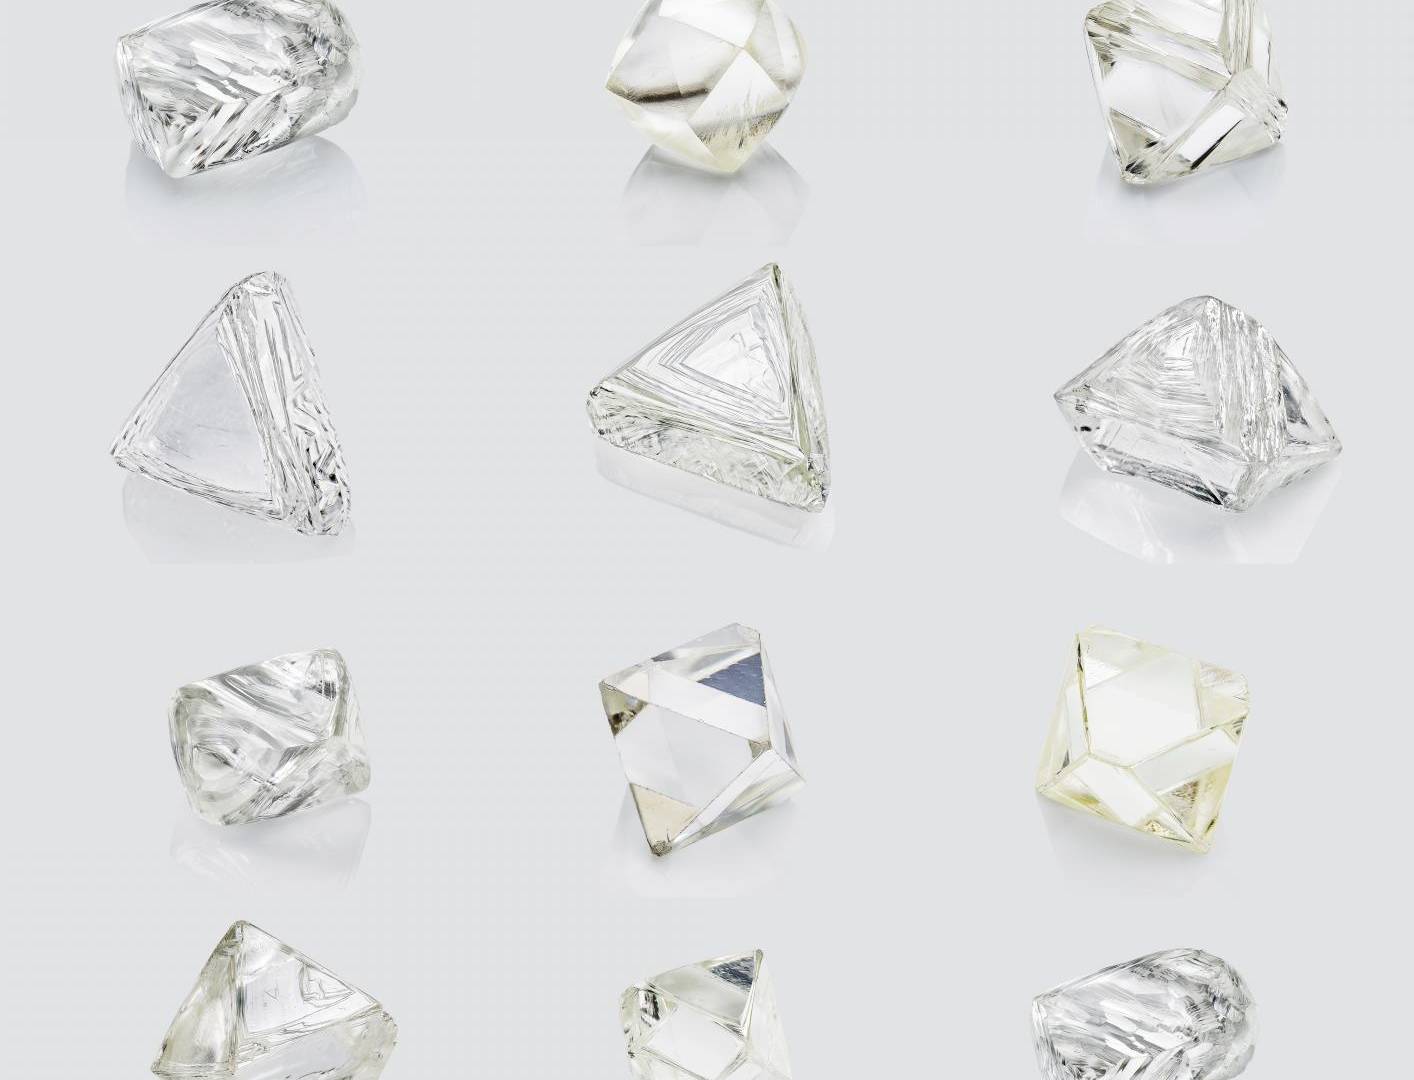 $!El fundador de Botswanamark dijo que los diamantes que vende son extraídos responsablemente.